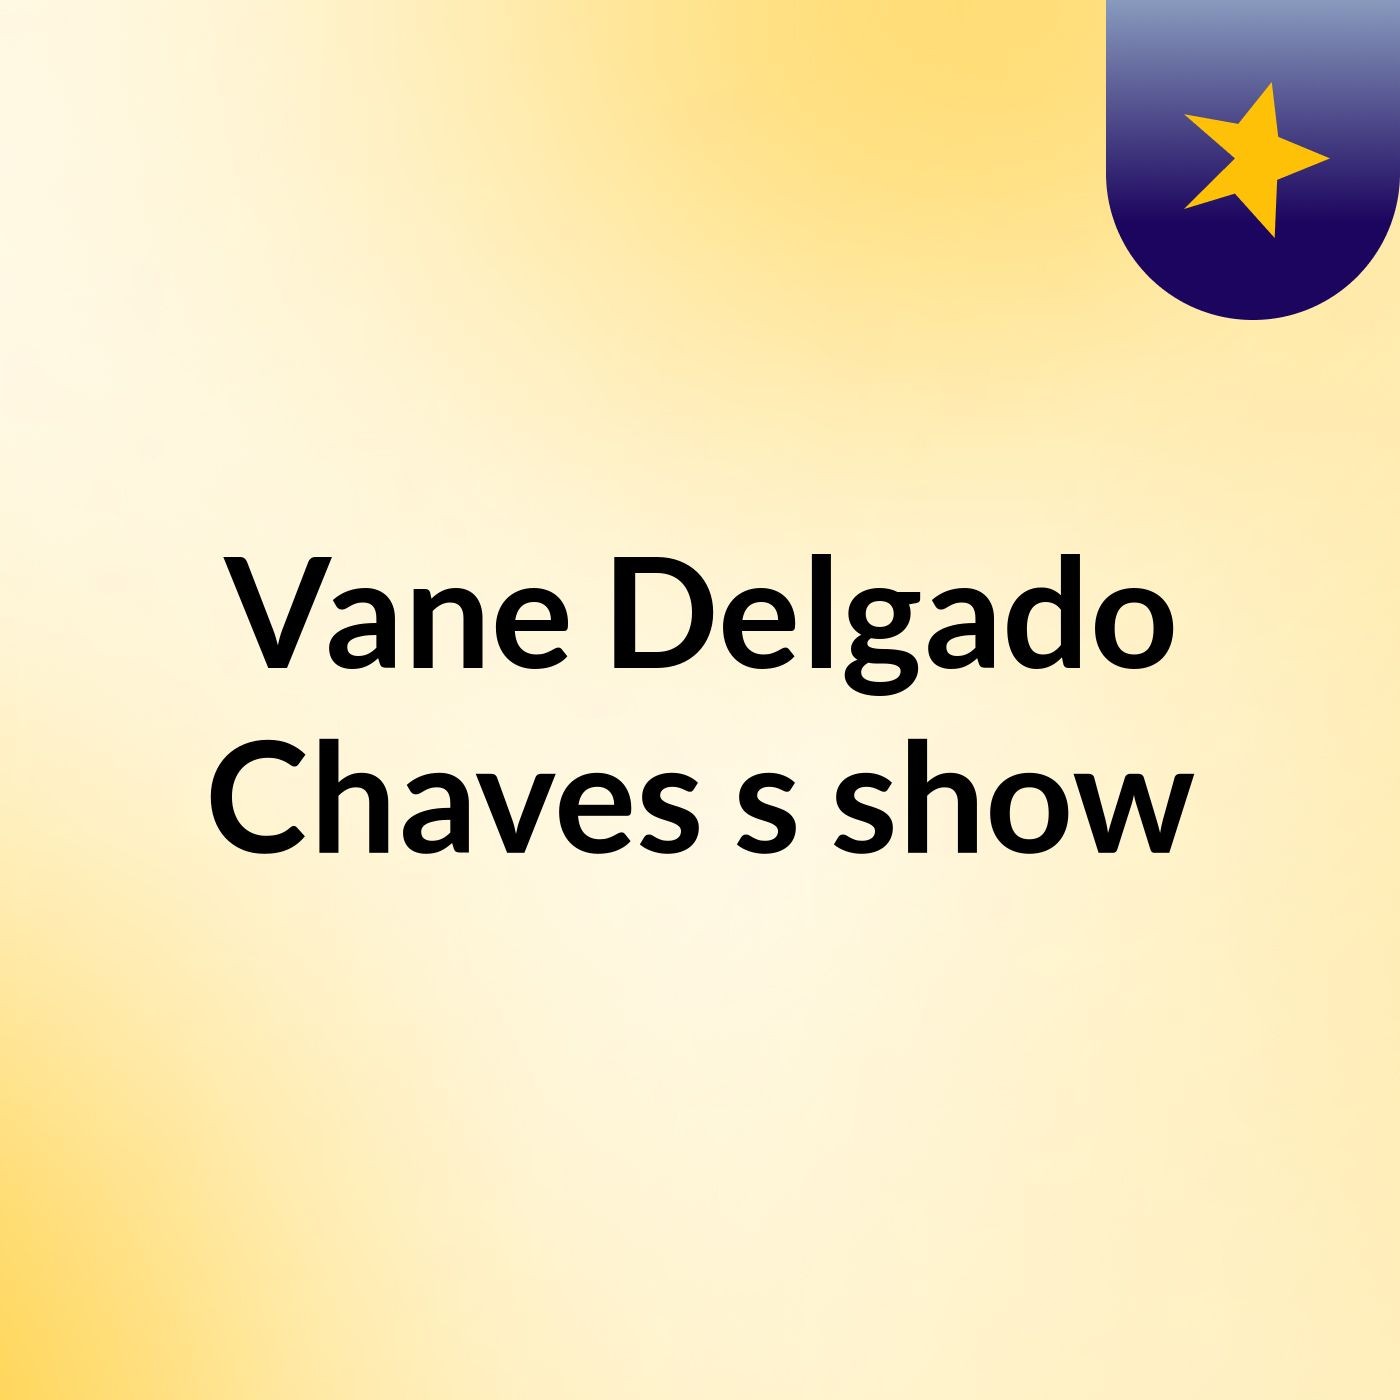 Vane Delgado Chaves's show